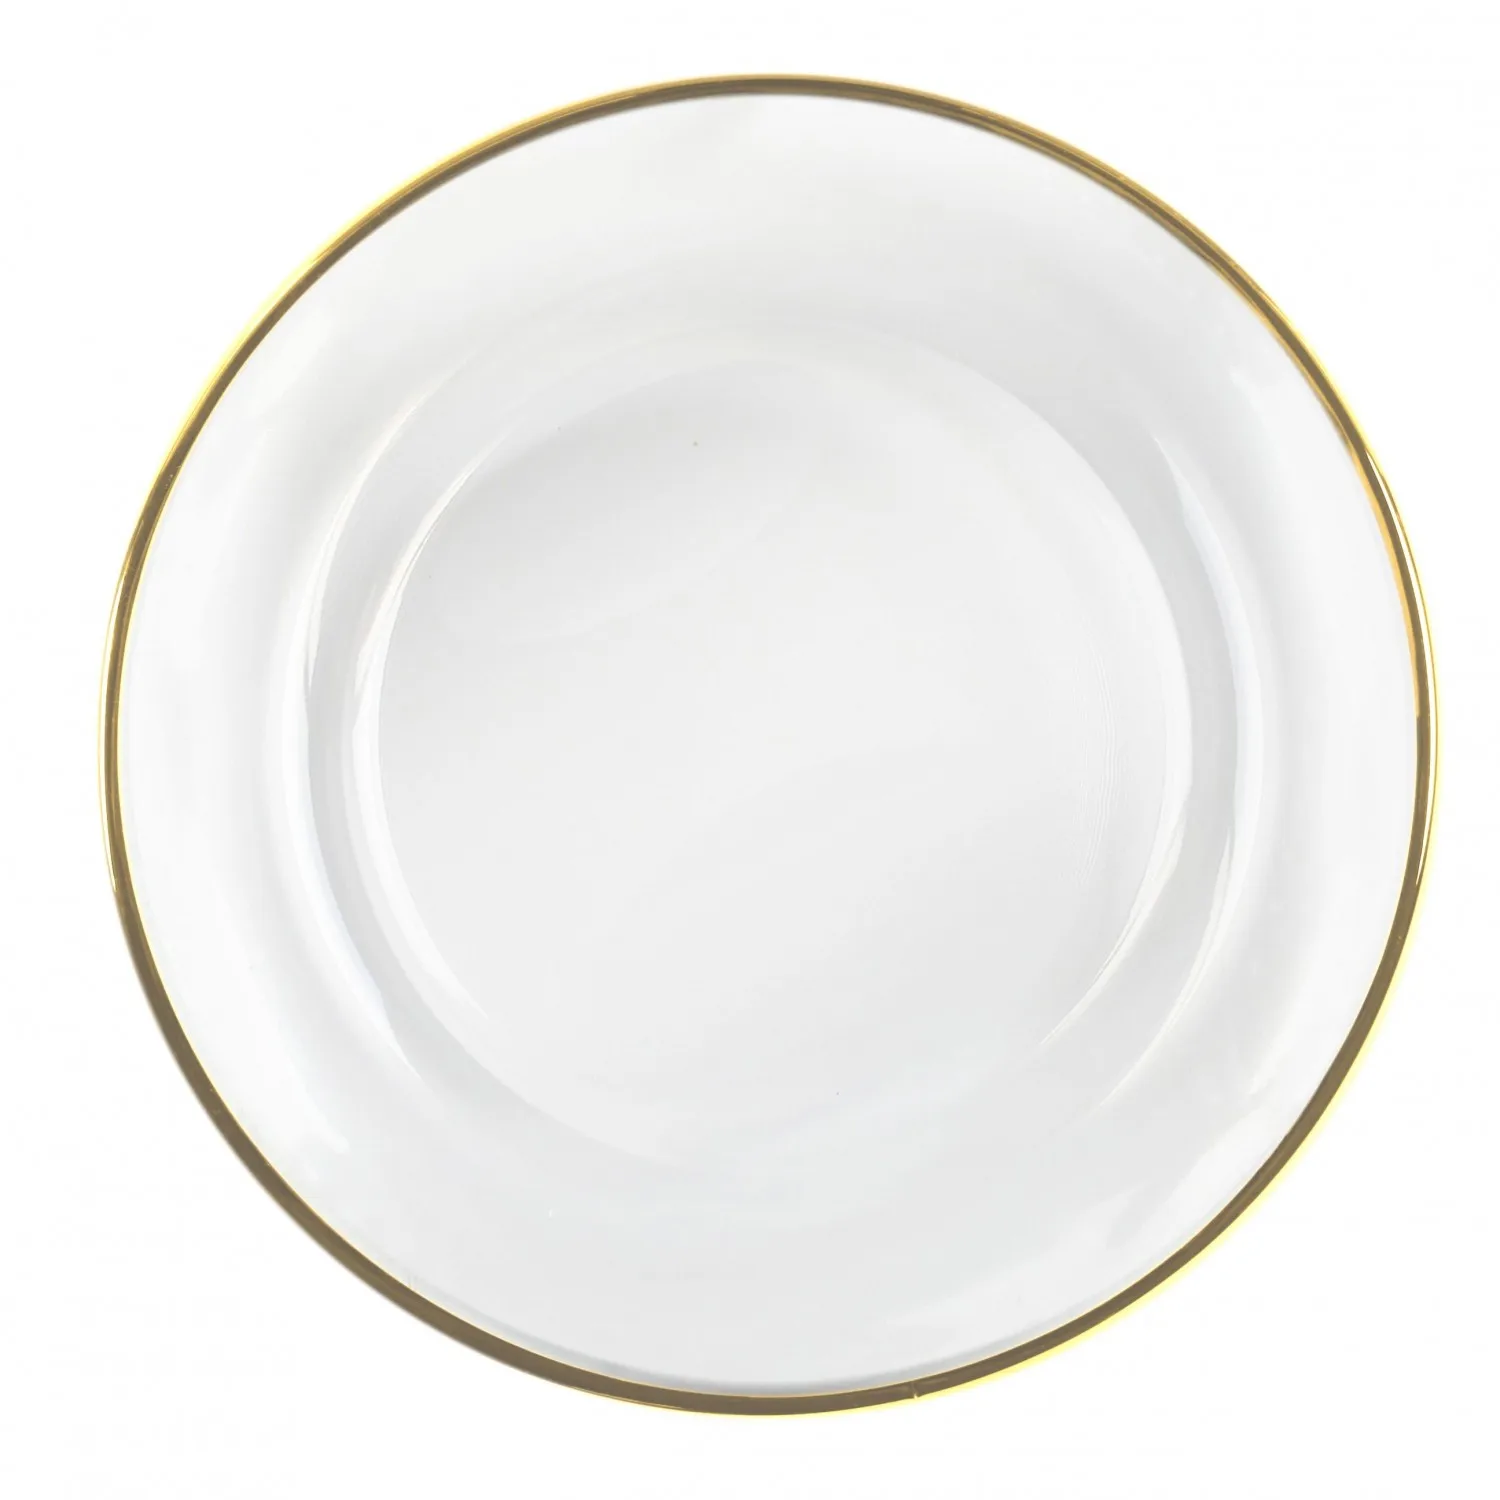 Ободок тарелки. Пластиковая тарелка с золотым ободком. Тарелка с широким ободком. Тарелка десертная Золотая. Тарелка подставочная Турция стекло.